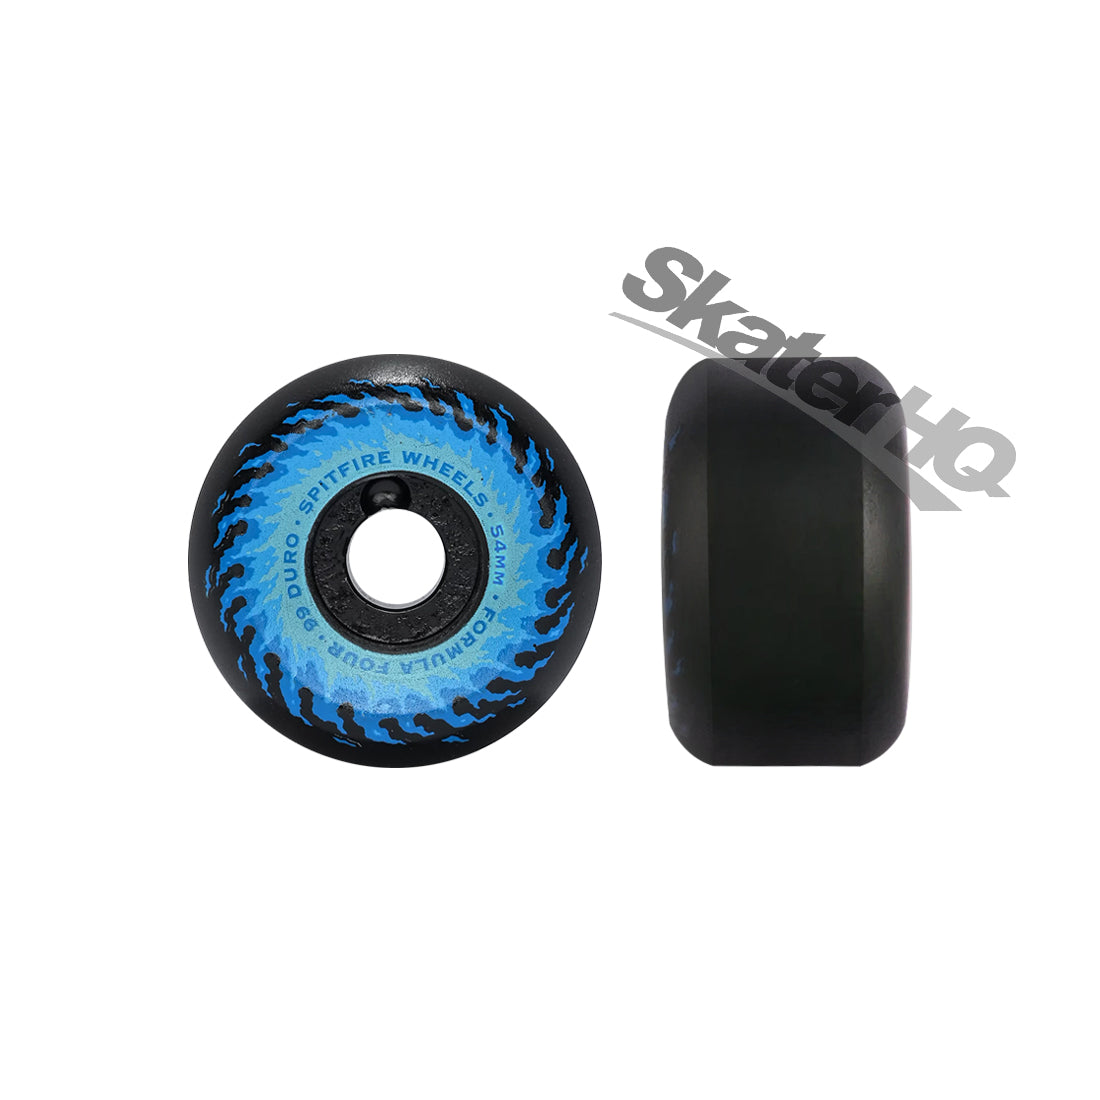 Spitfire Form Four 54mm 99a OG Fireballs Conical - Black/Blue Skateboard Wheels